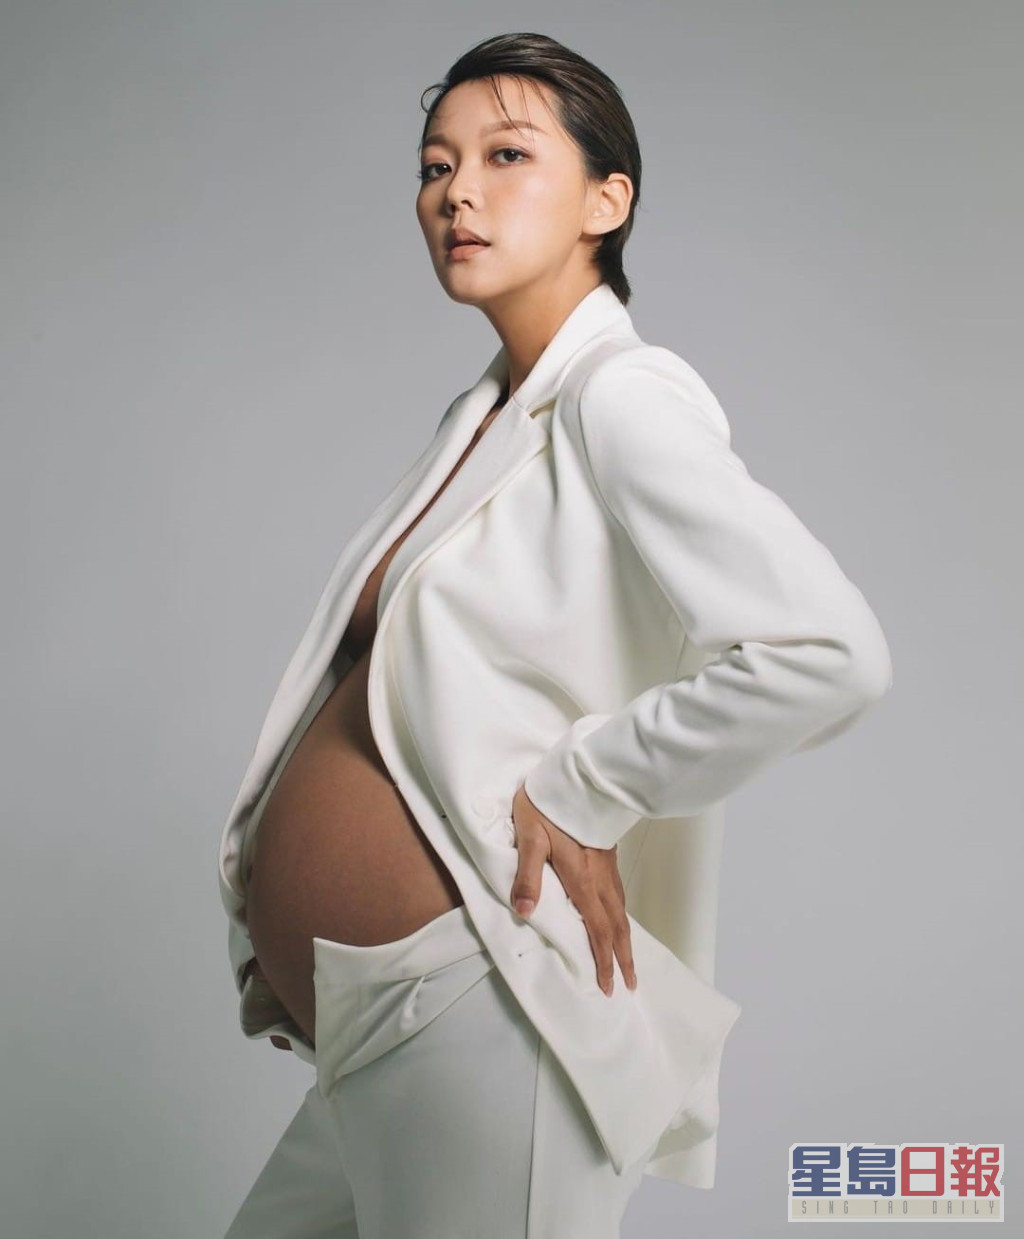 梁诺妍于IG分享性感孕照。